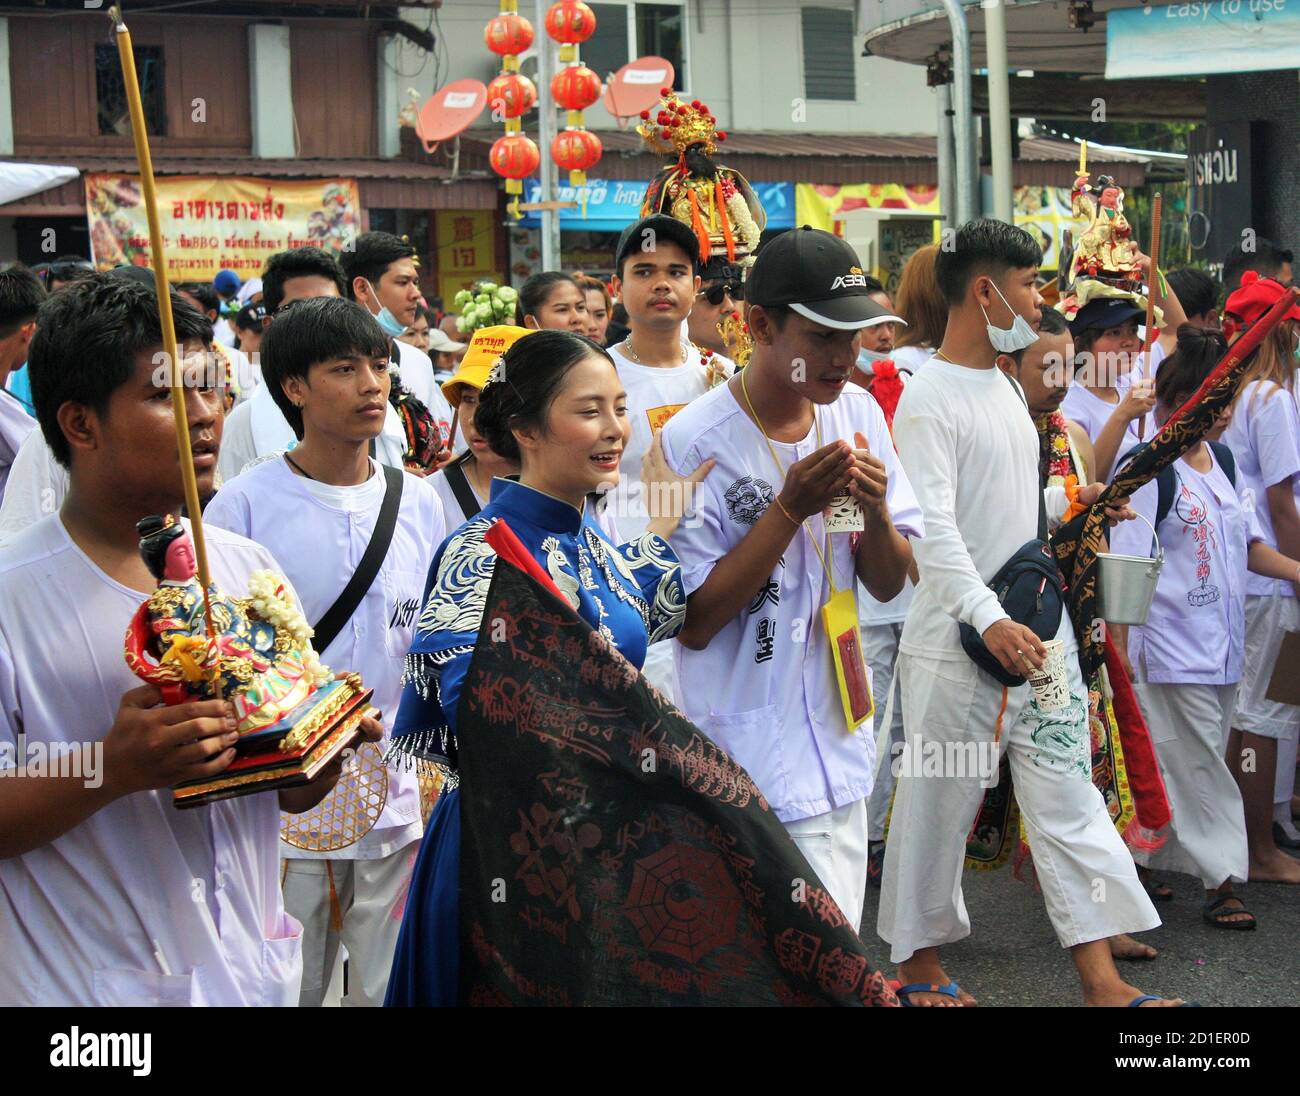 Phuket Town / Tailandia - 7 de octubre de 2019: Festival Vegetariano de Phuket o nueve Festival de los Dioses Emperador procesión callejera, desfile de devotos chinos tailandeses Foto de stock